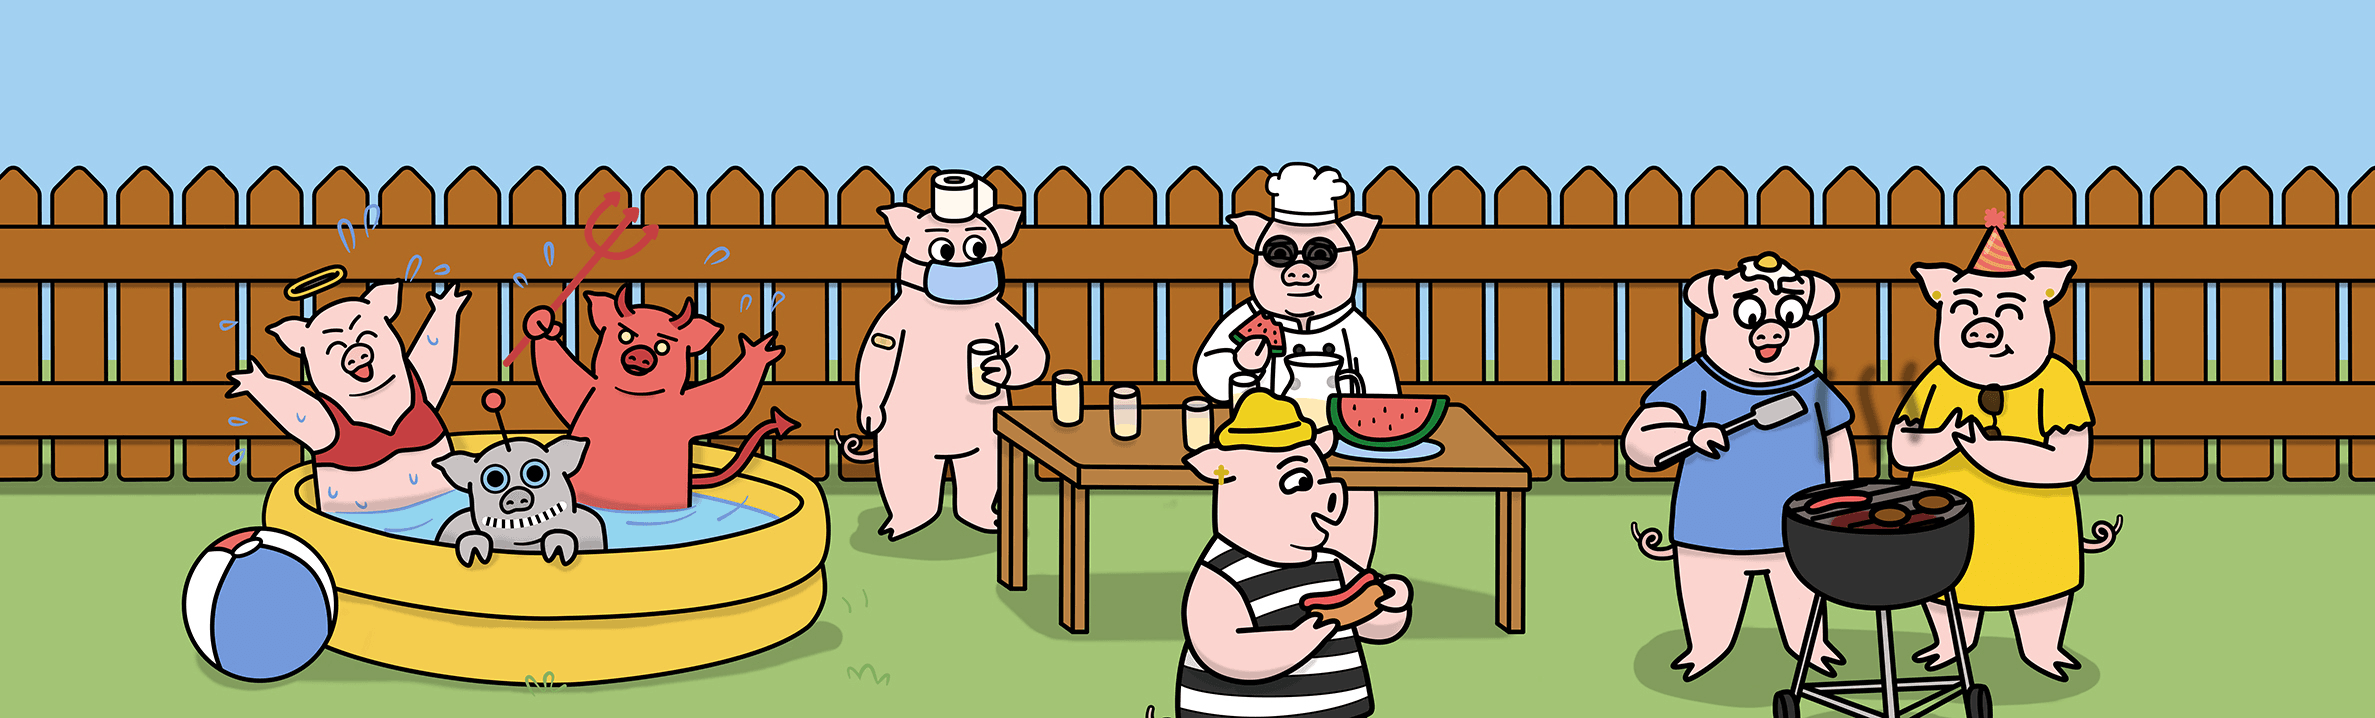 Oink's Backyard BBQ